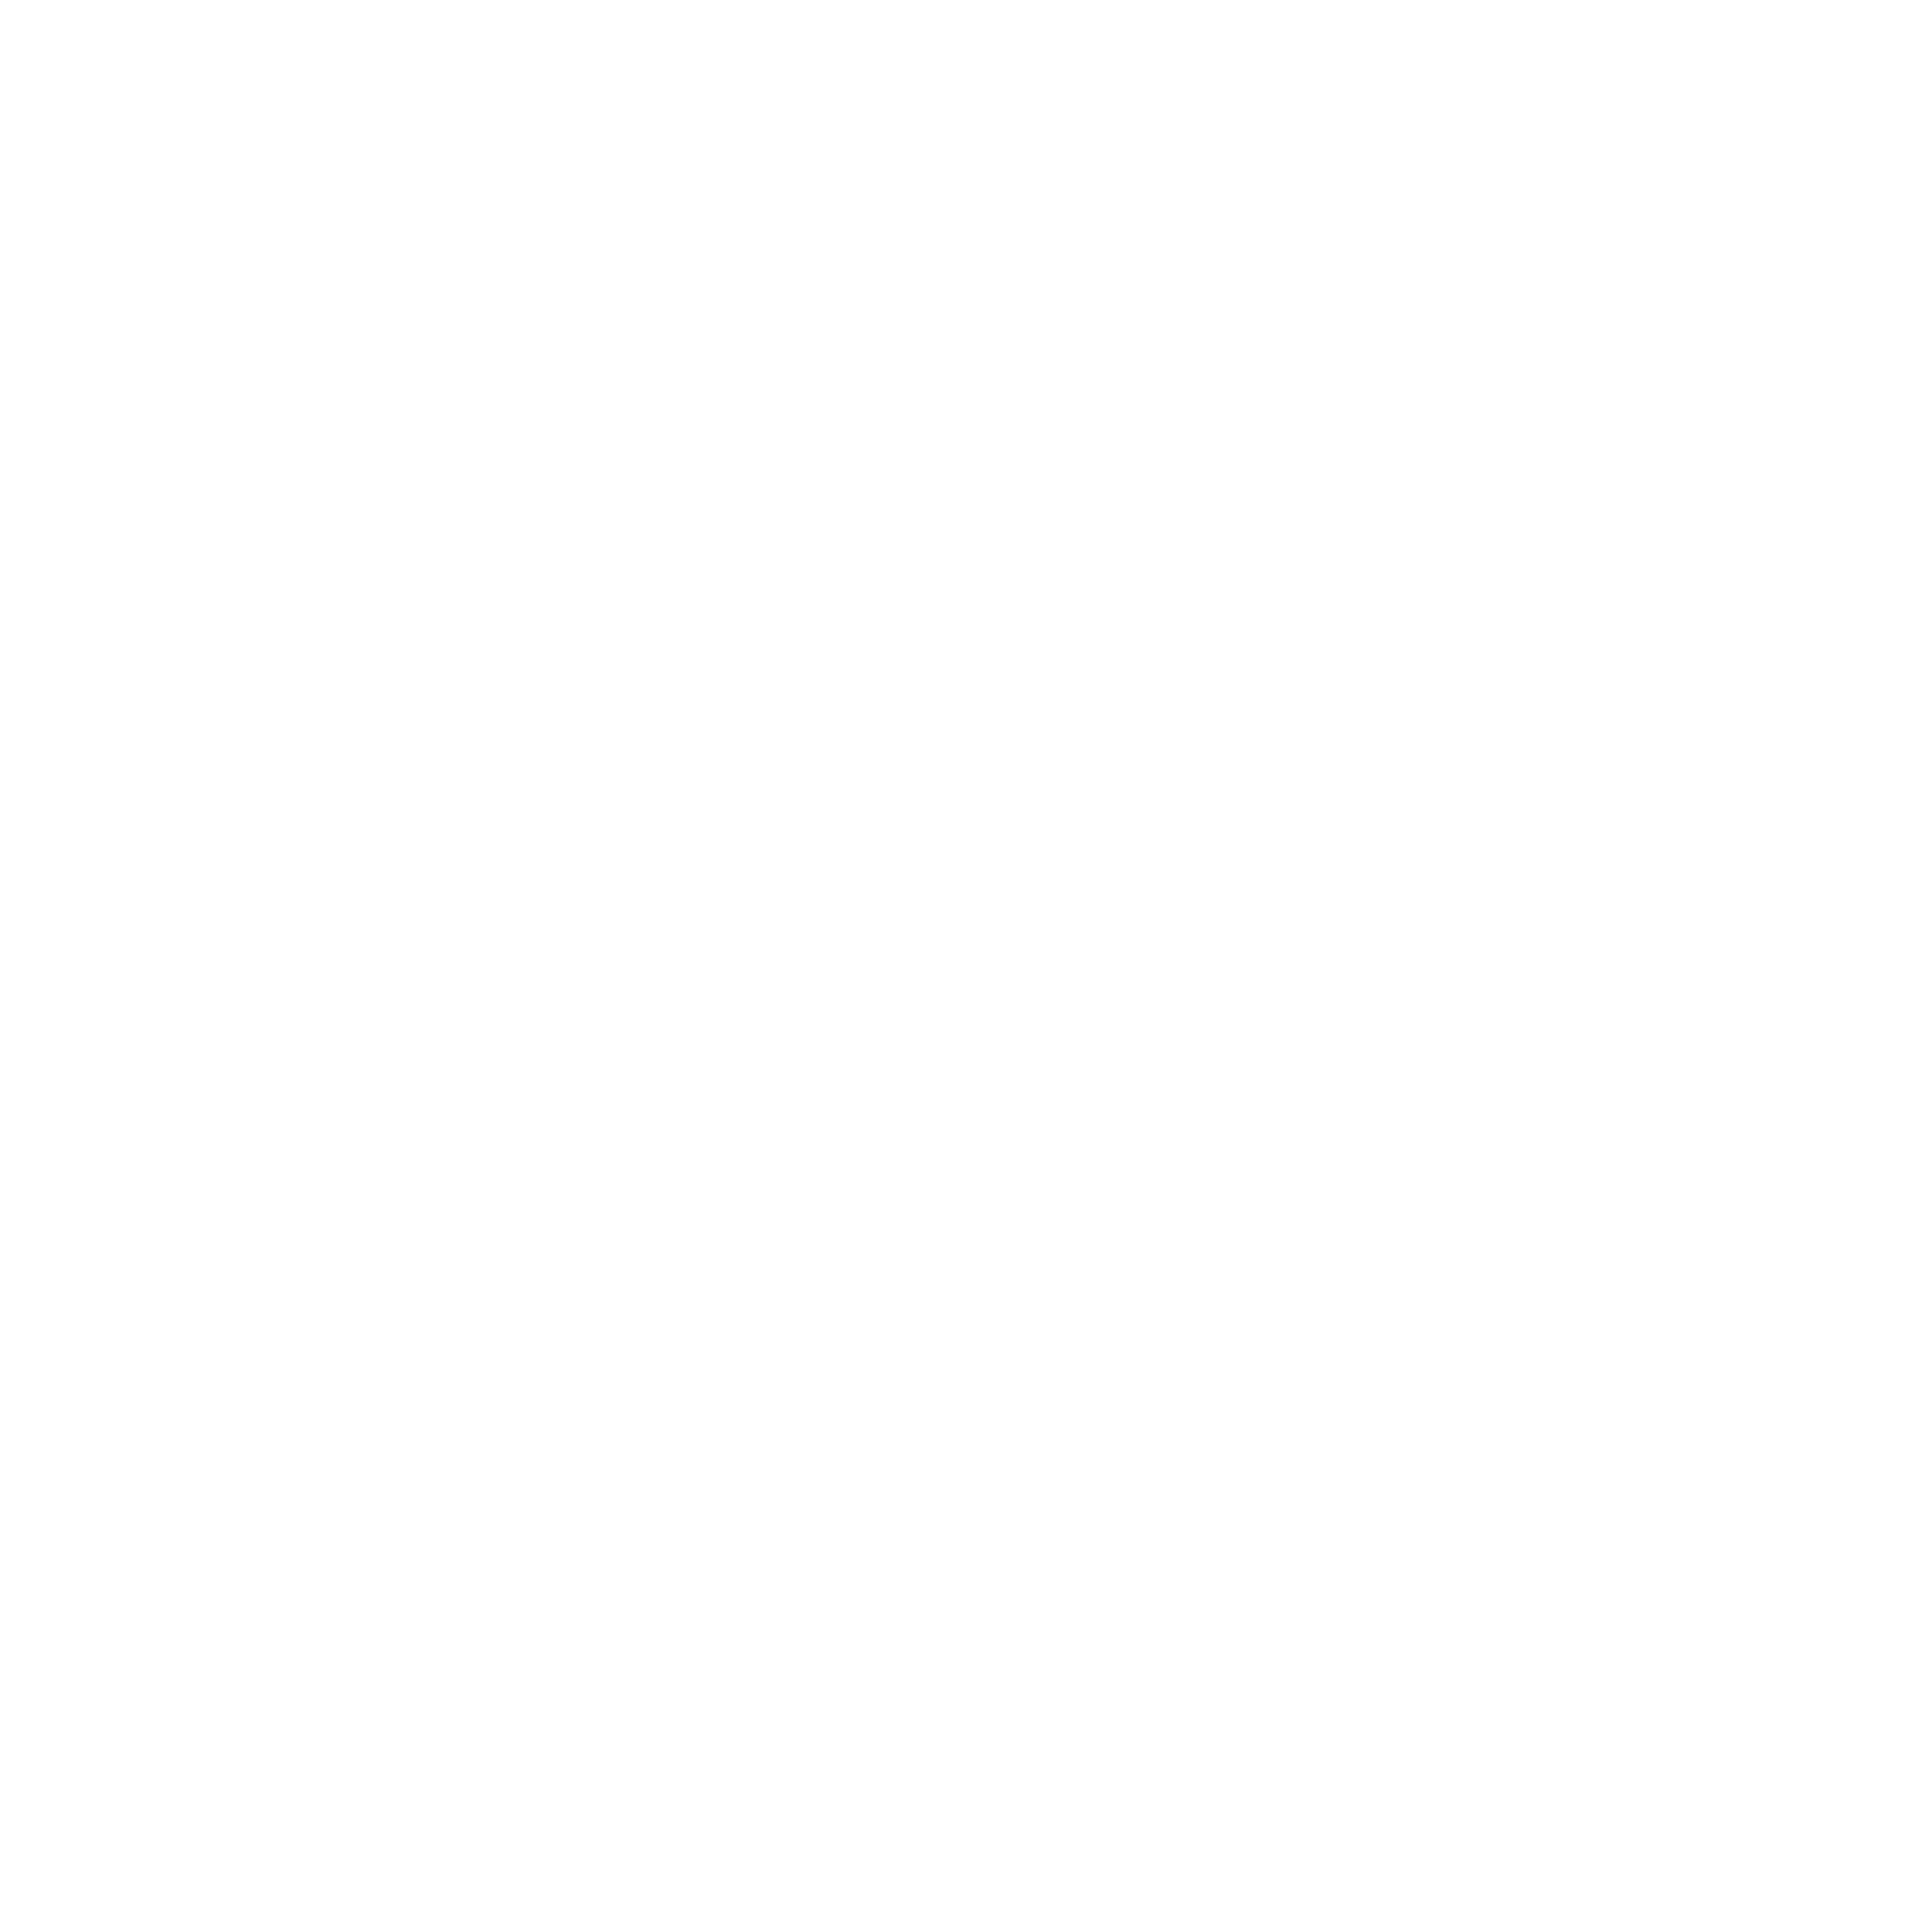 Tigo - profile picture commission